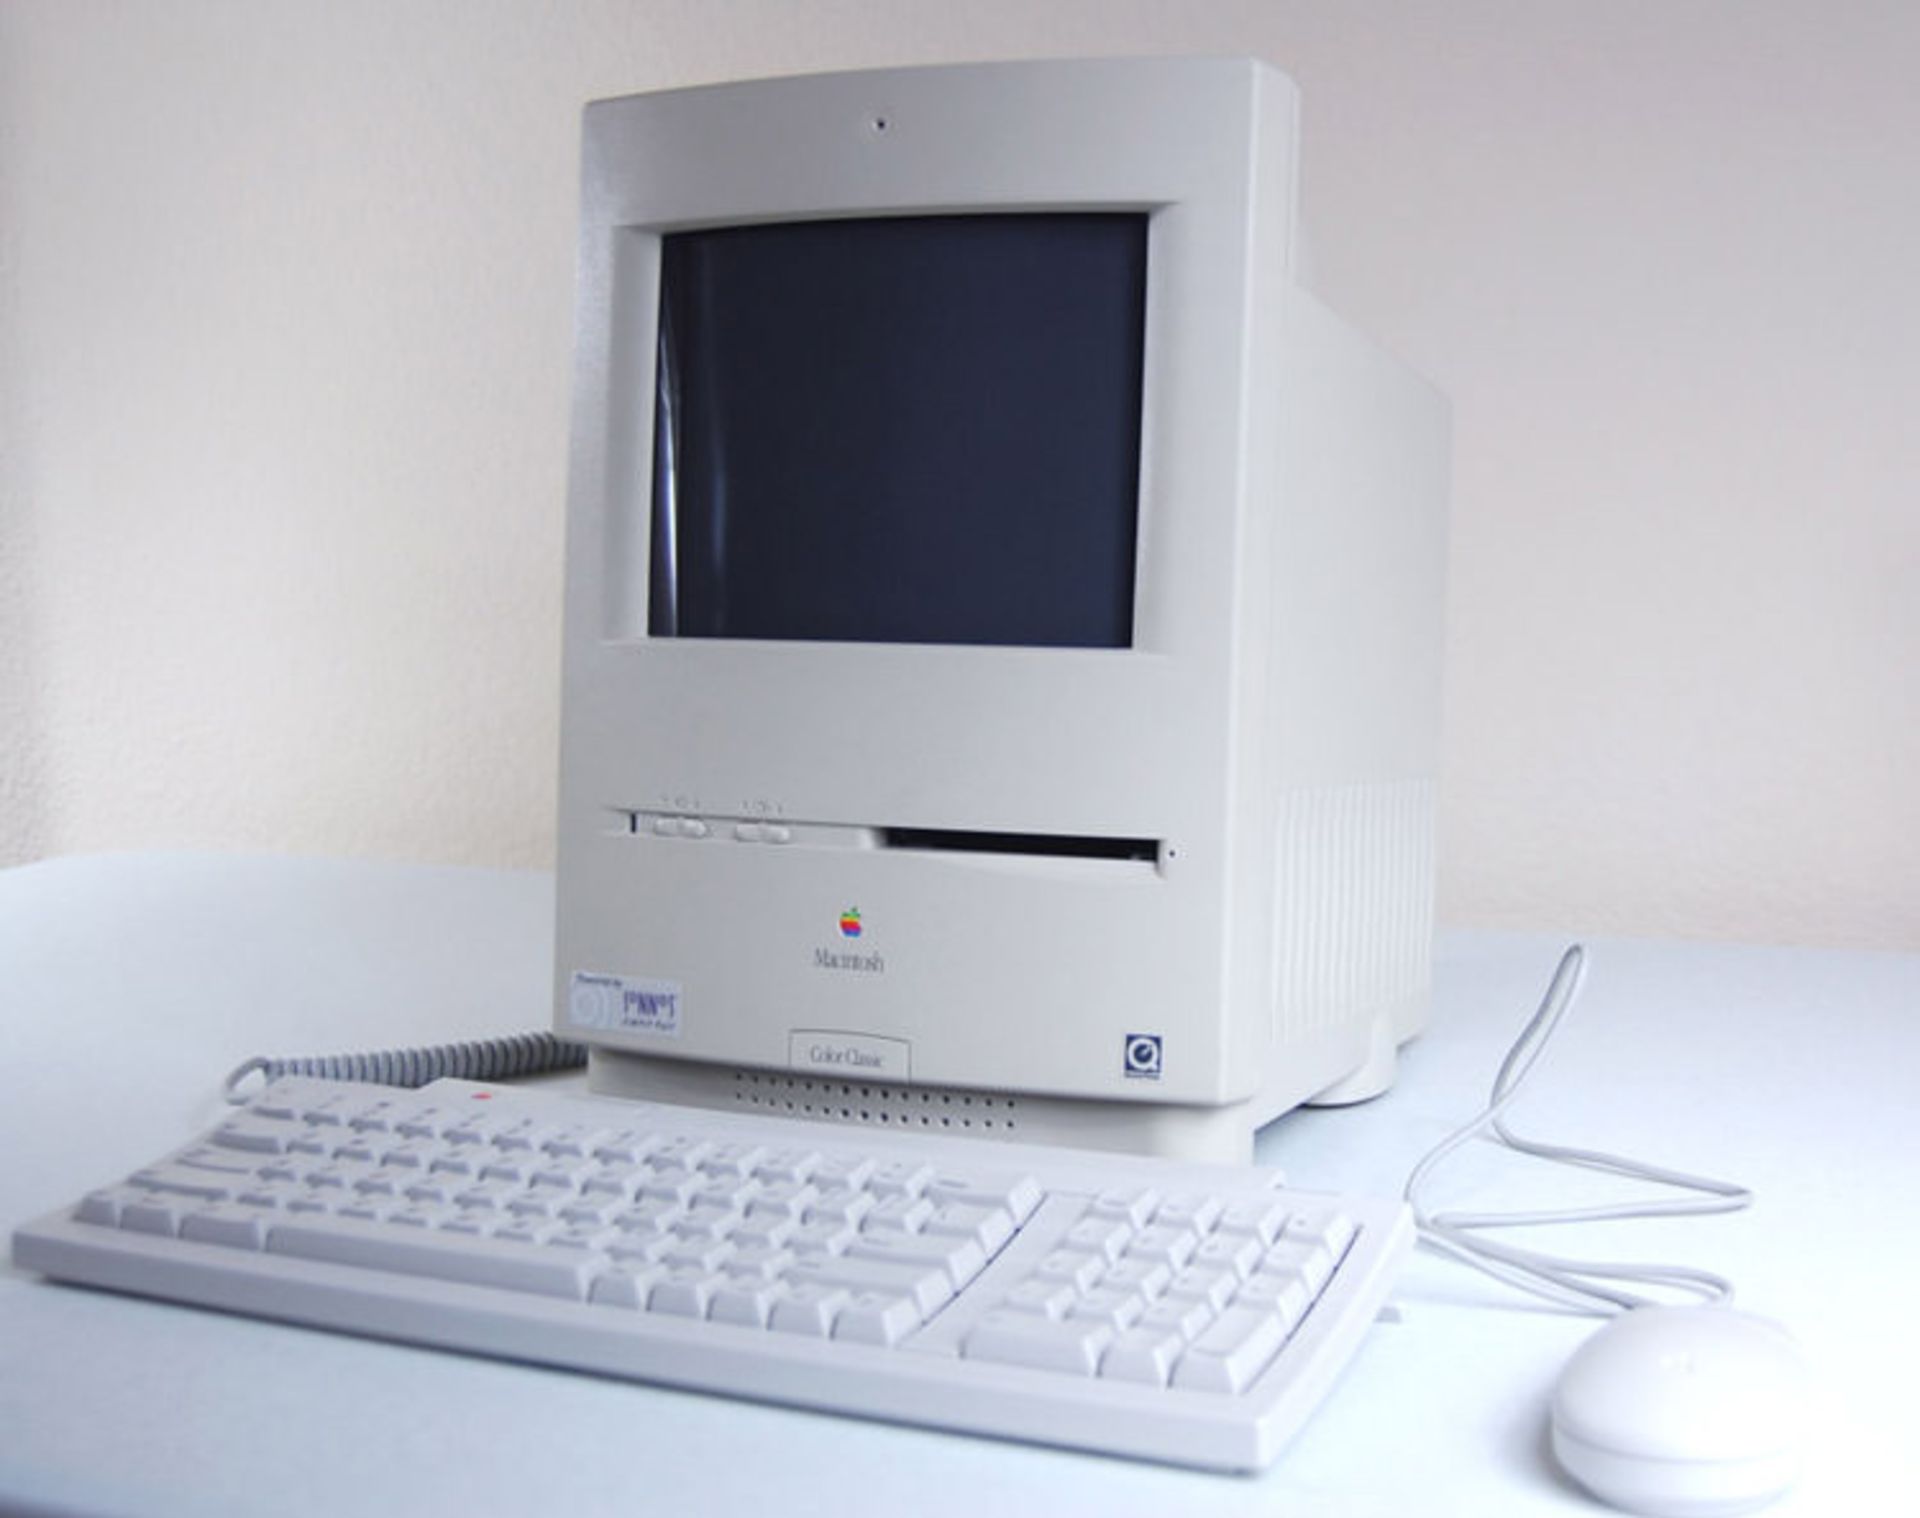 مرجع متخصصين ايران مكينتاش Macintosh Color Classic